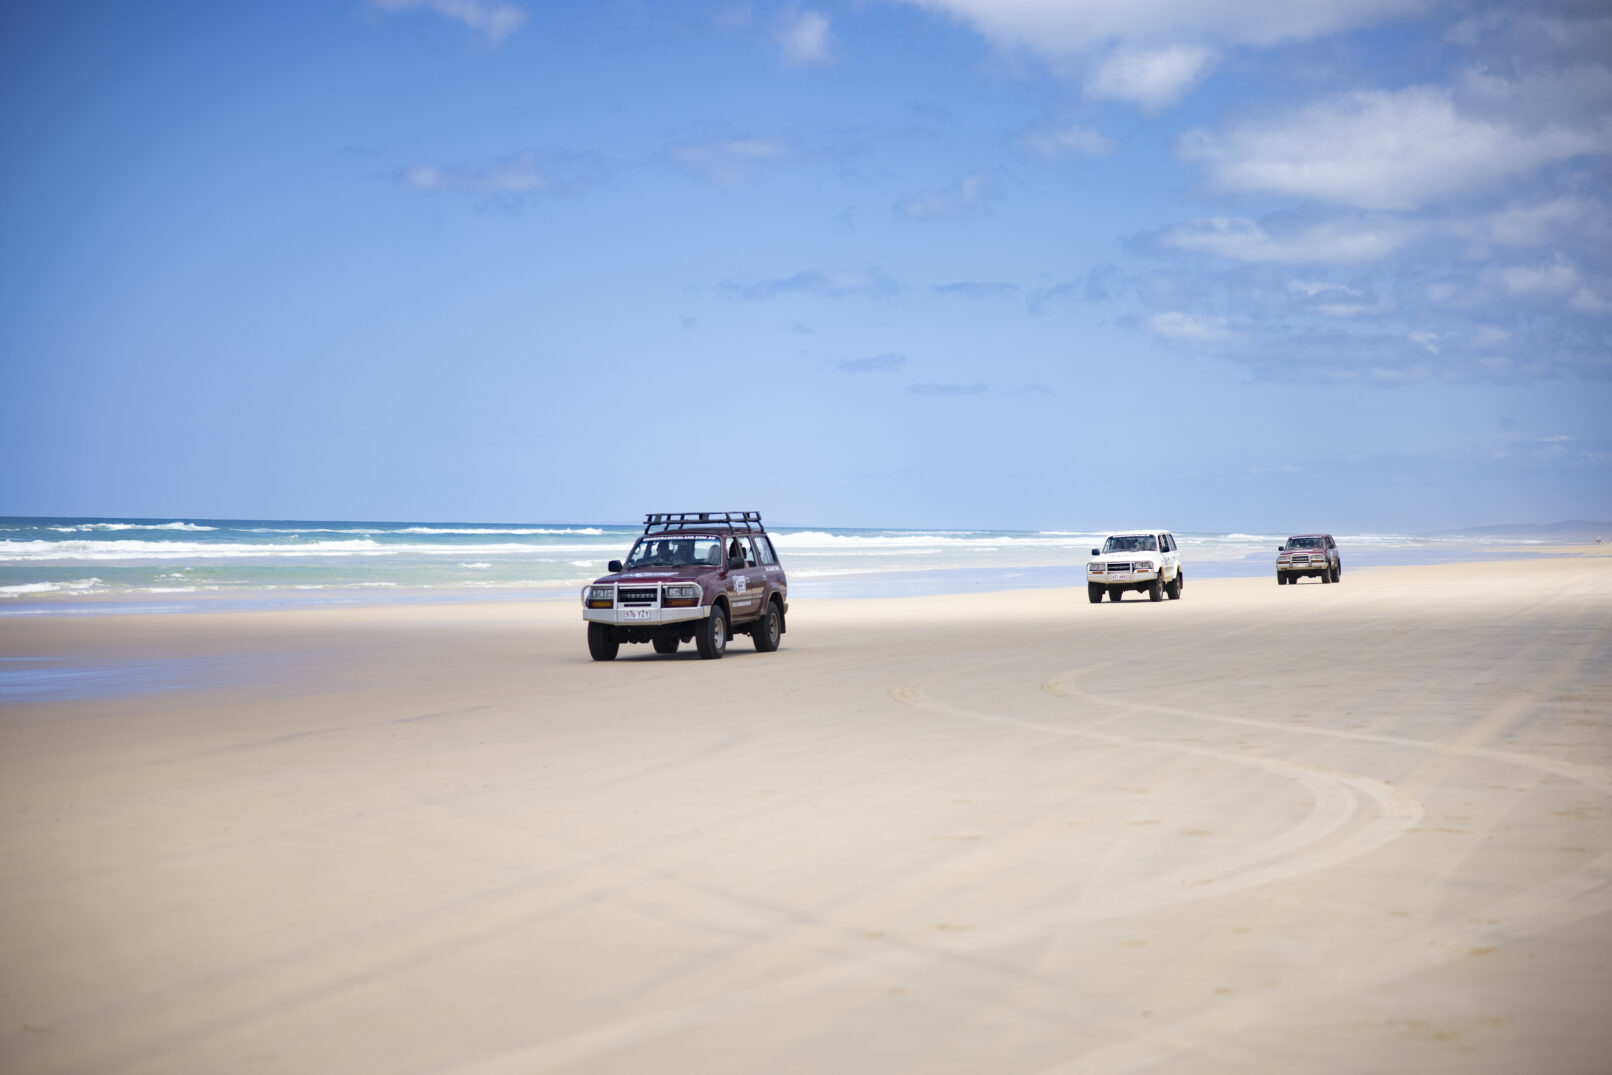 Fraser Island – Ausventure Travel